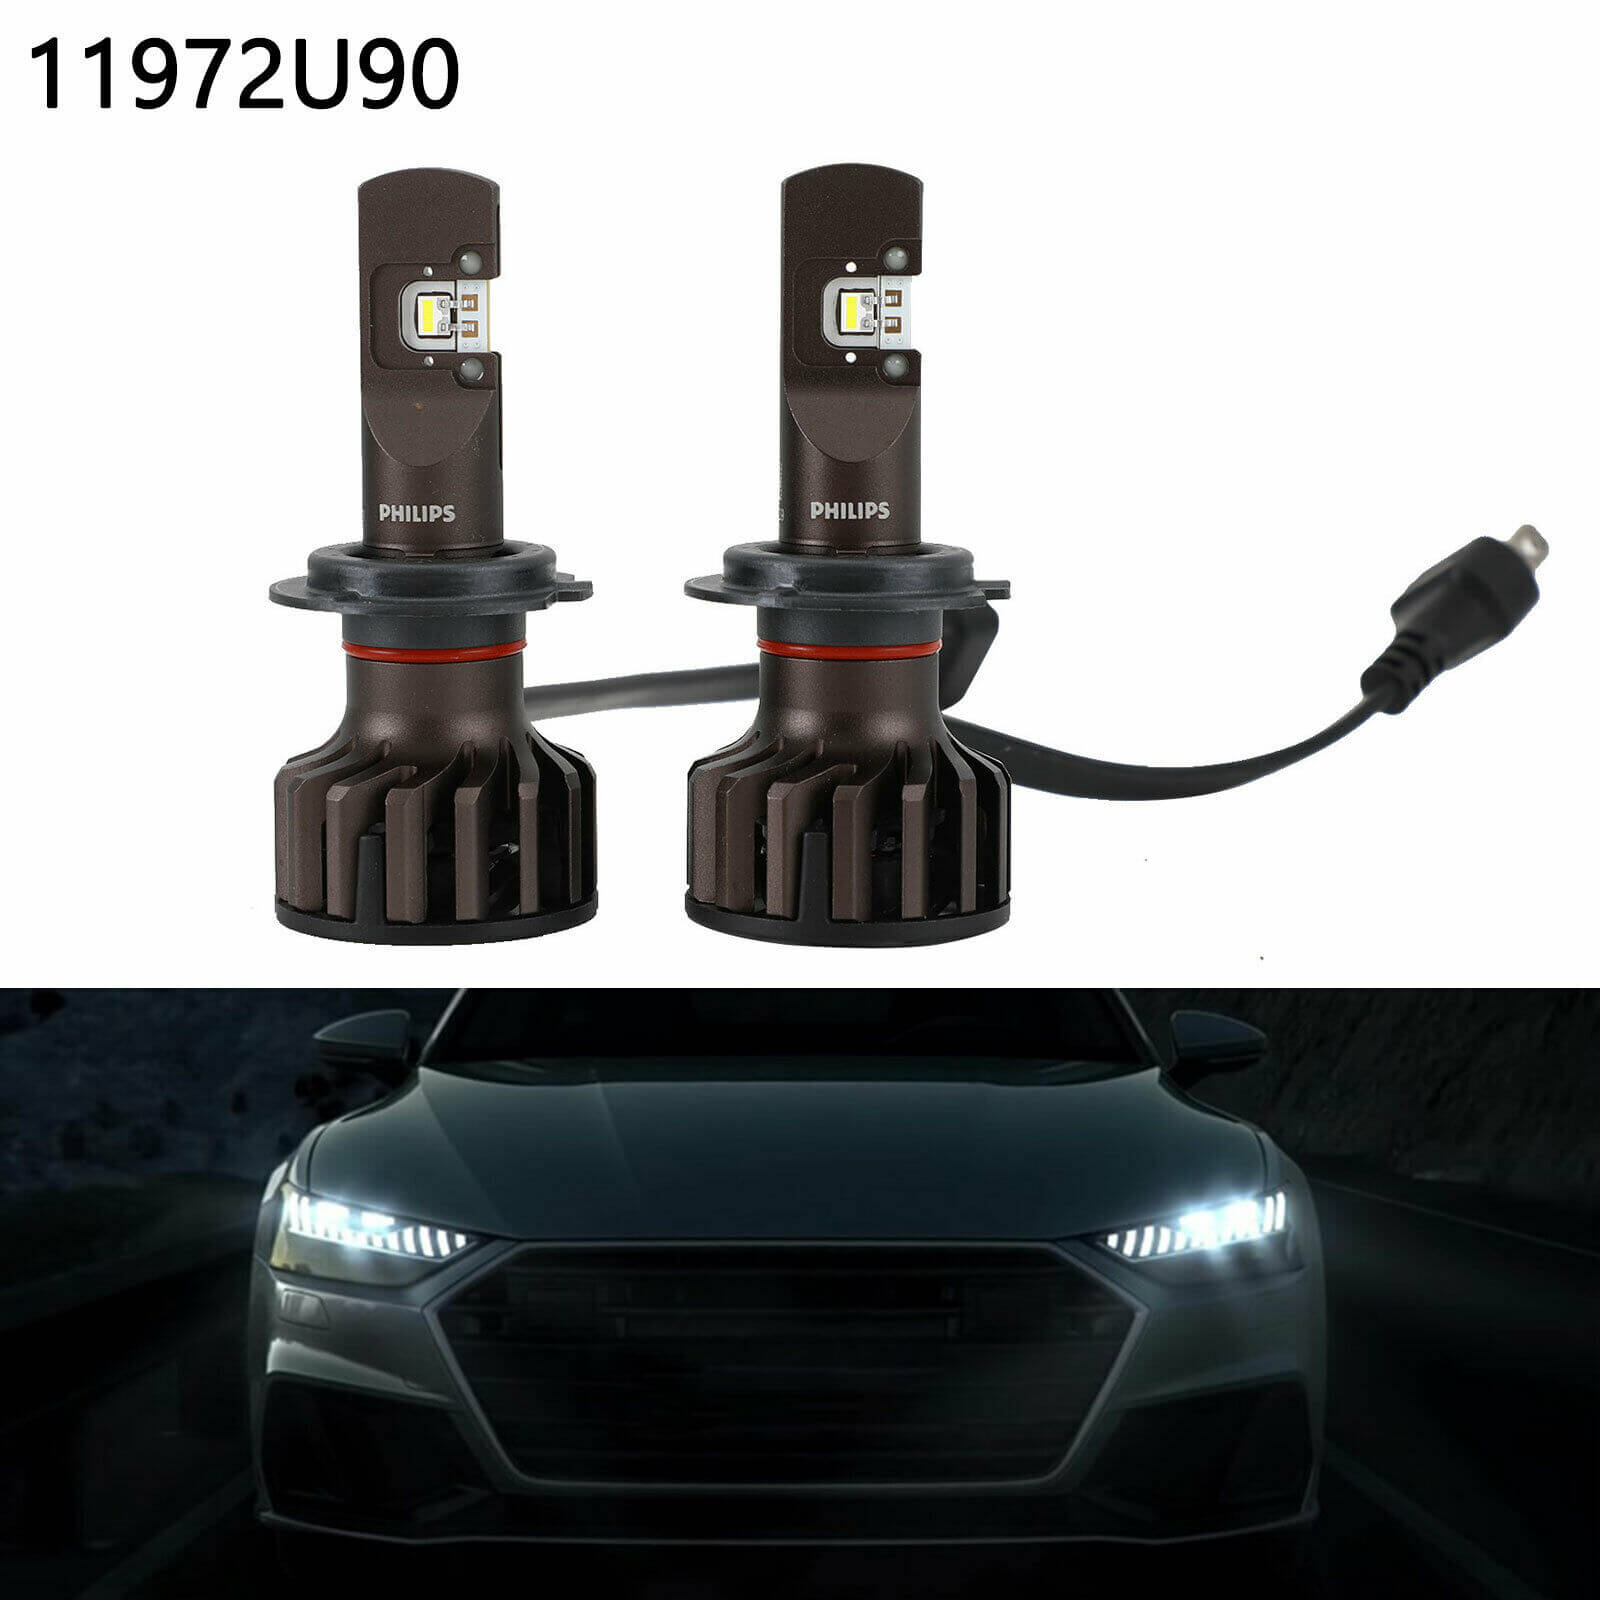 Bóng đèn pha LED Philips Pro 9000 HIR2 LED 11012 U90 CW X2 tăng sáng 250% cho xe hơi xe ô tô